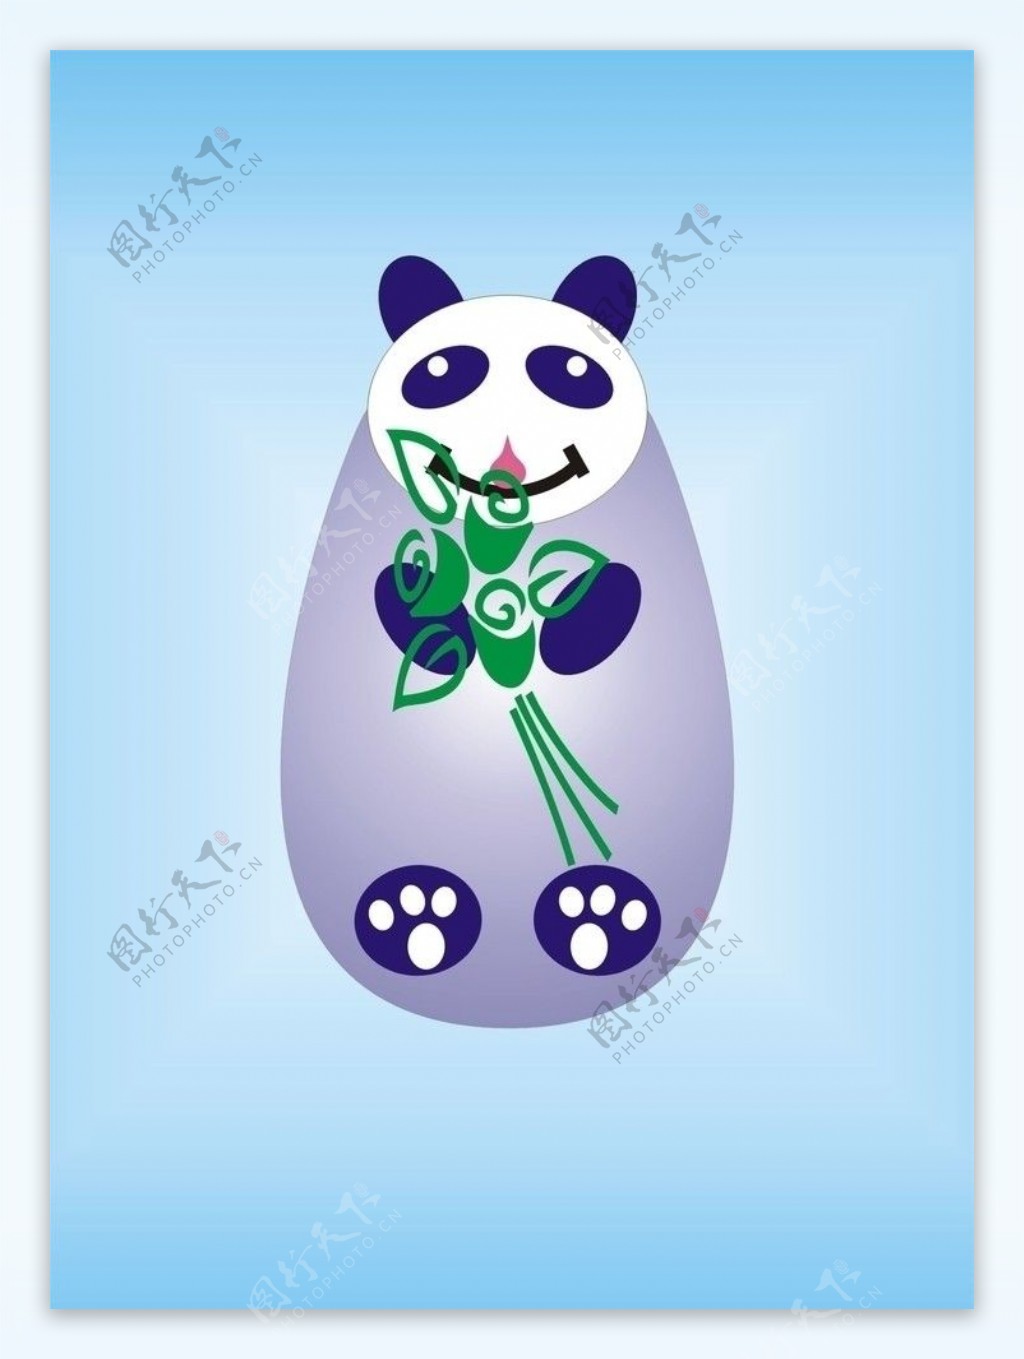 熊猫吃竹不倒翁图片